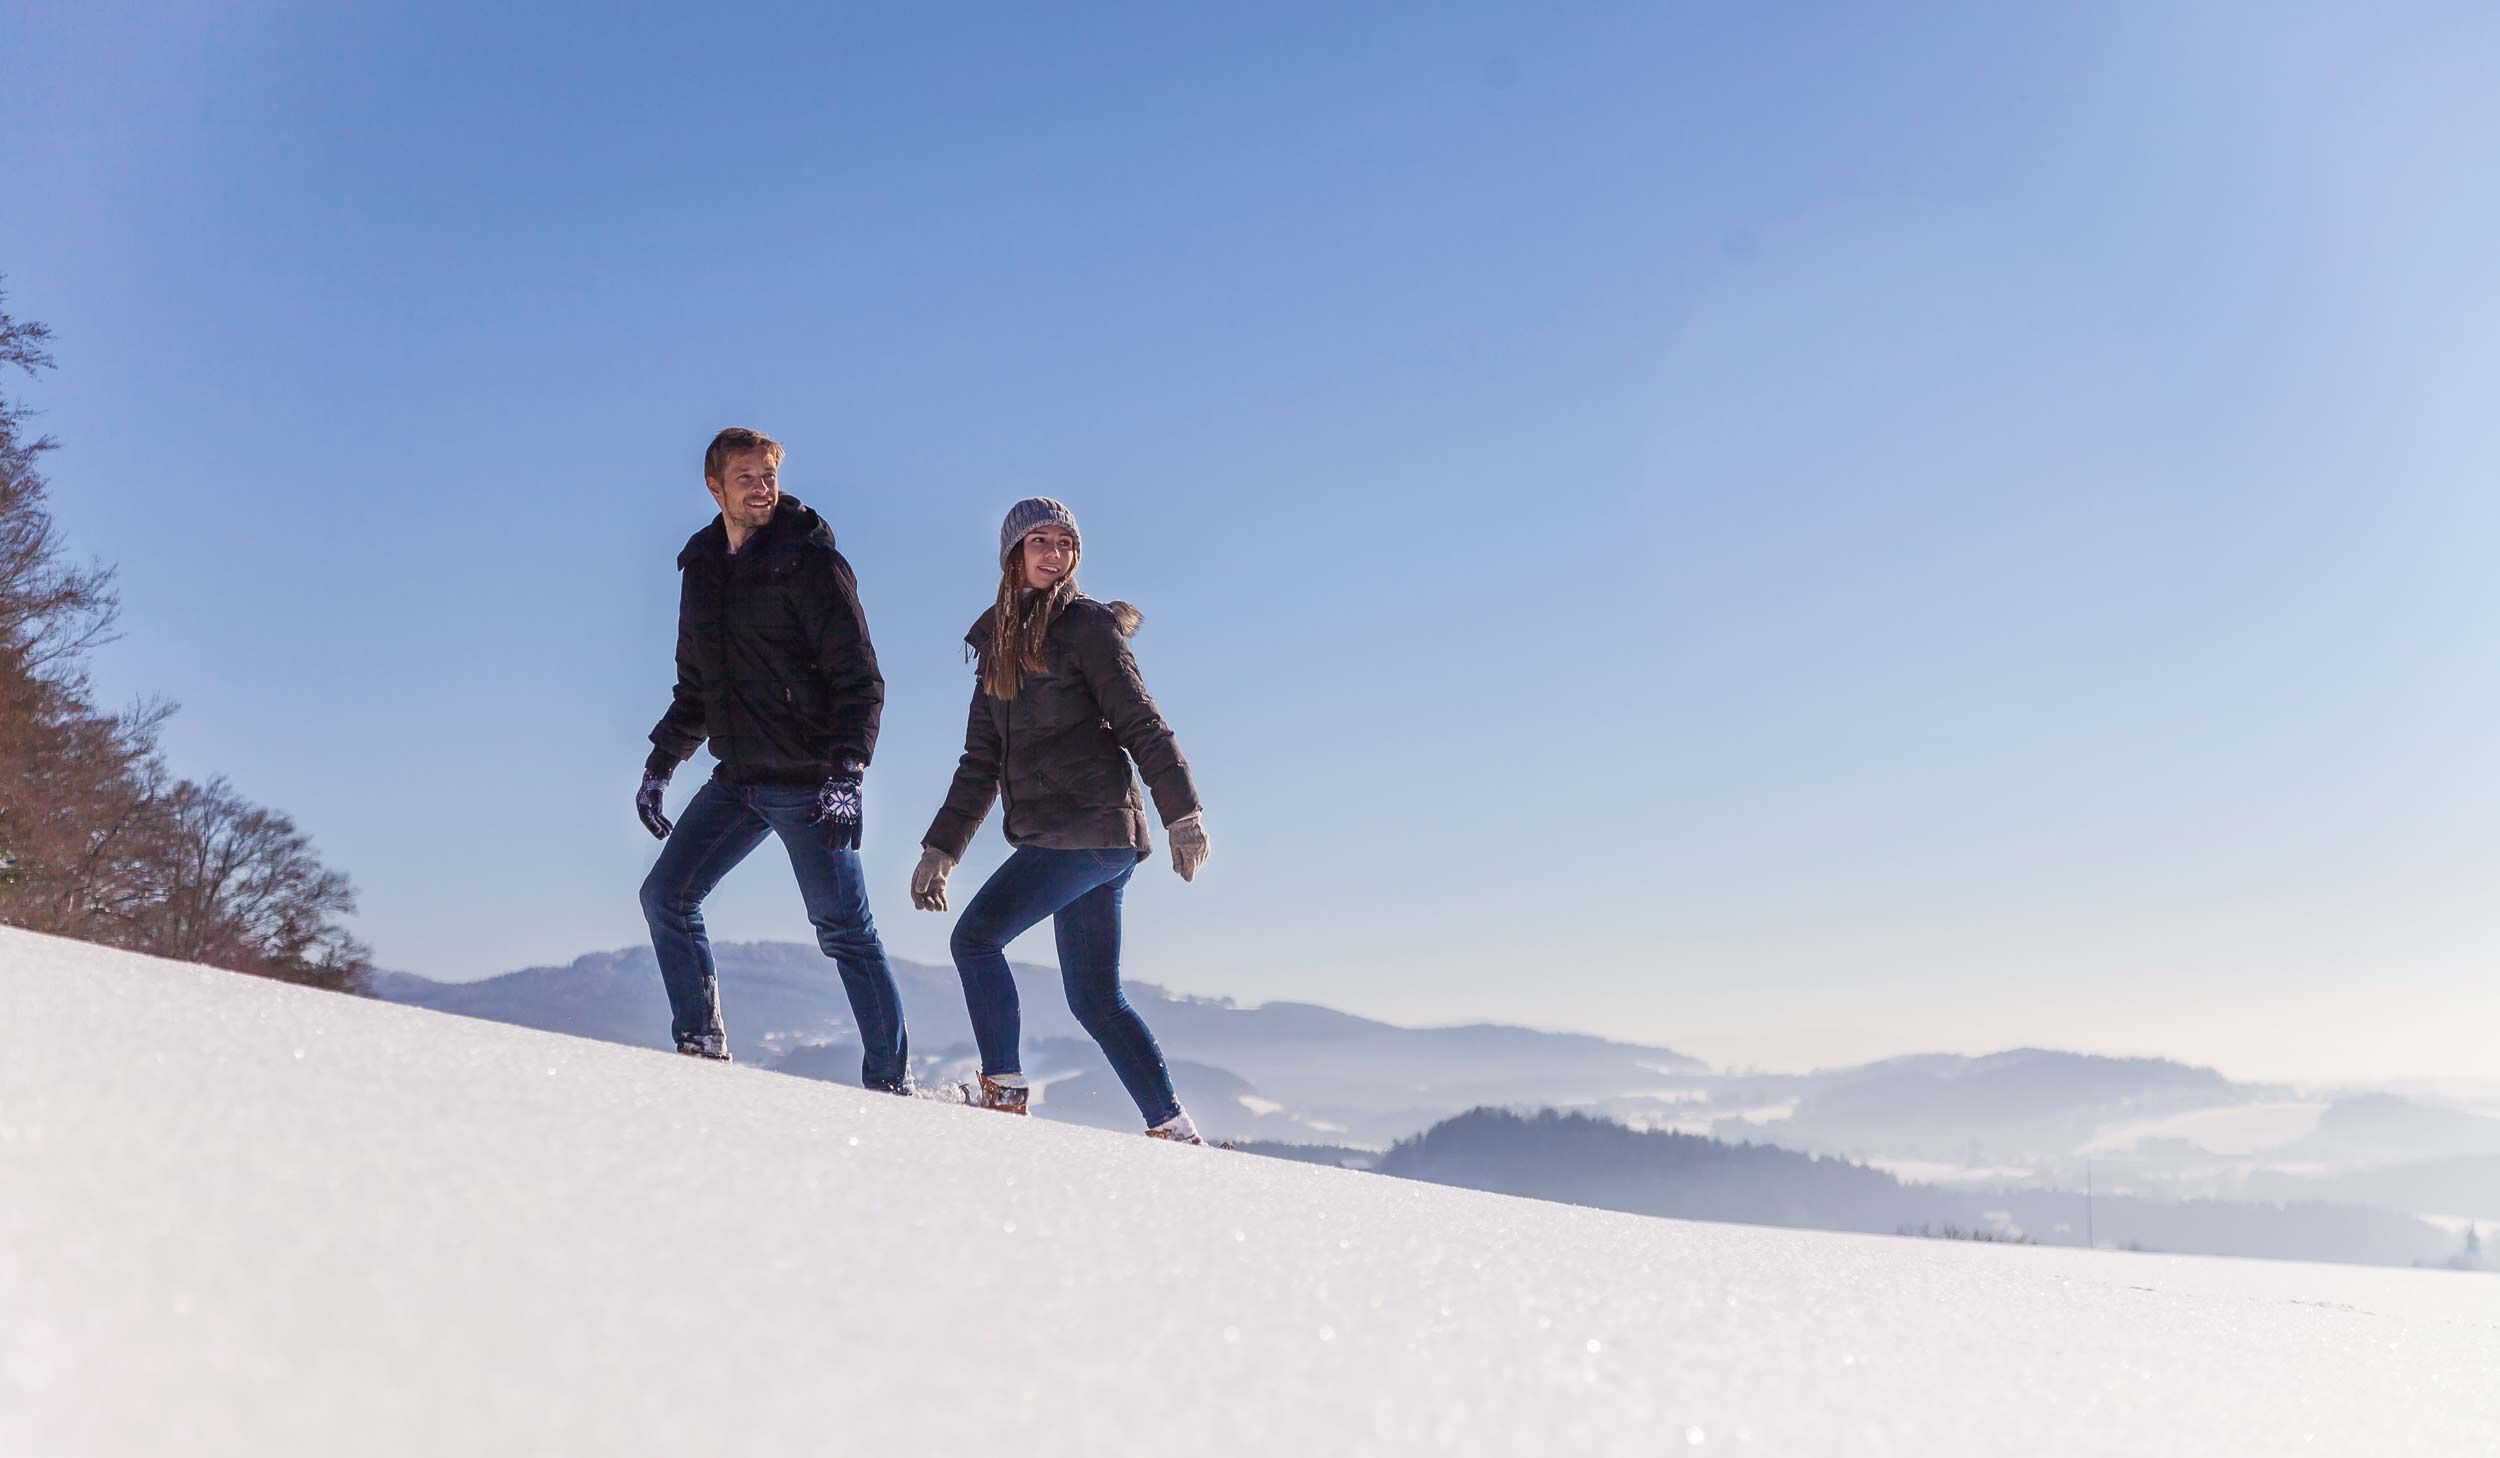 Winterwanderung nähe des Wellness- & Sporthotels in Bayern